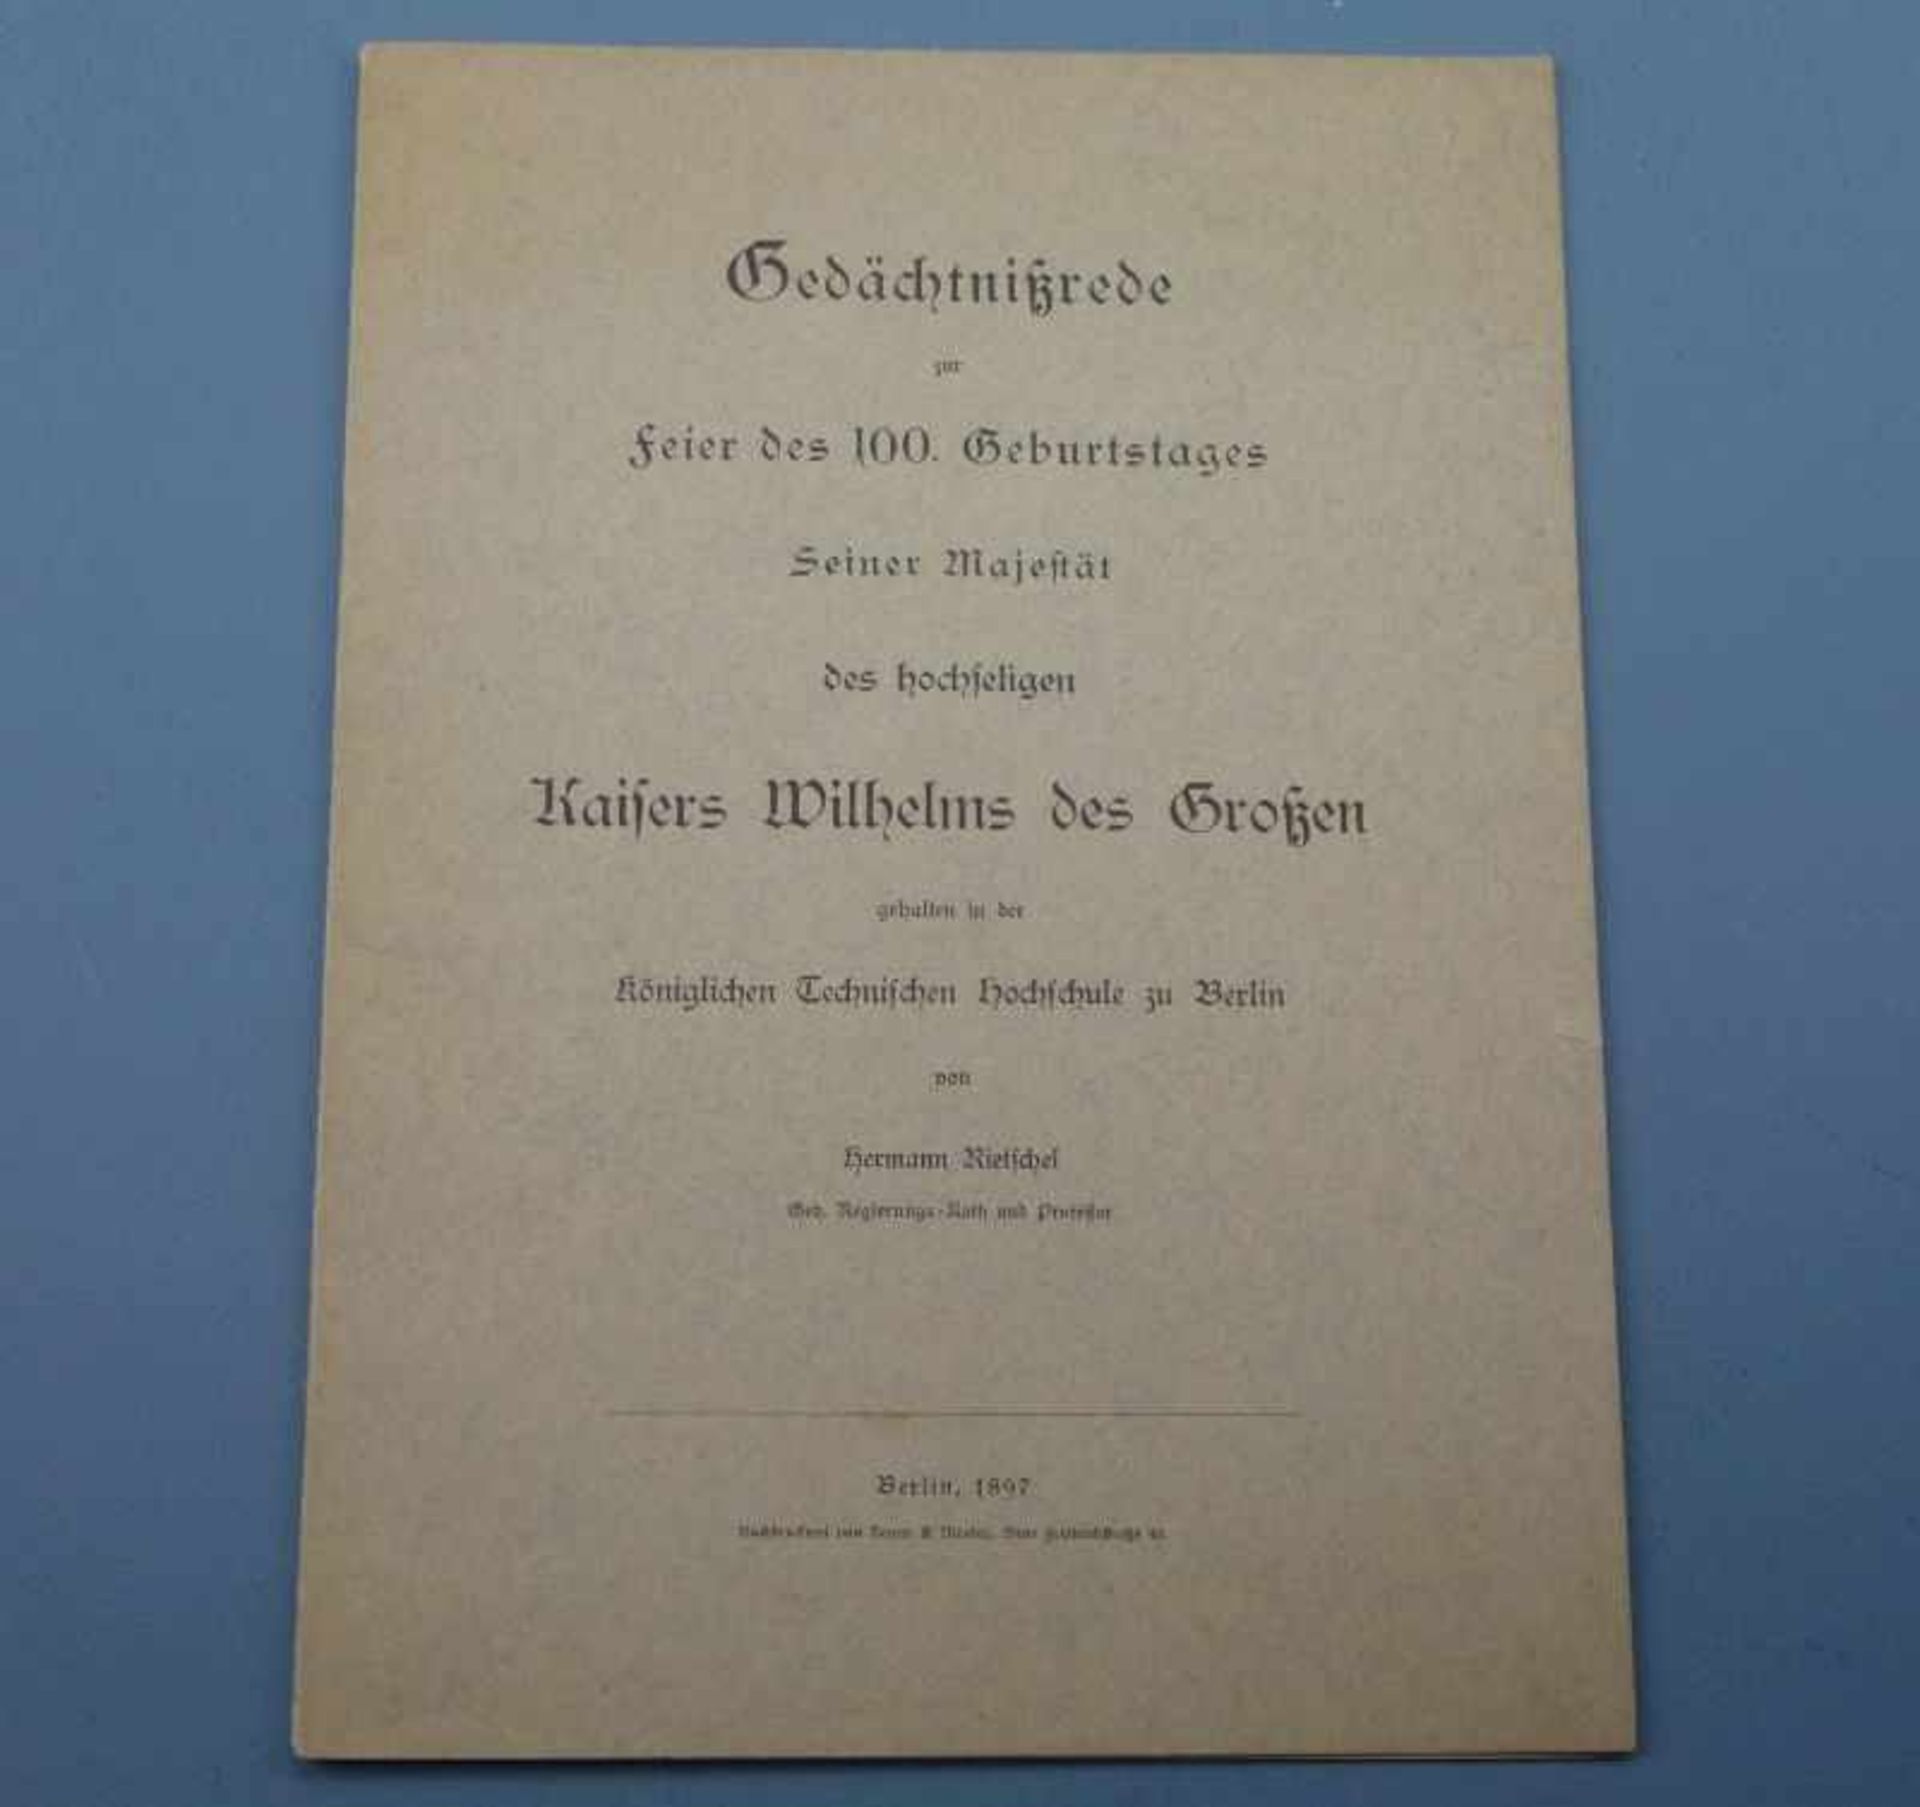 Gedächtnisrede zum 100. Geburtstag Kaiser Wilhelms des Großen Hermann Rietschel, Berlin1897, 18